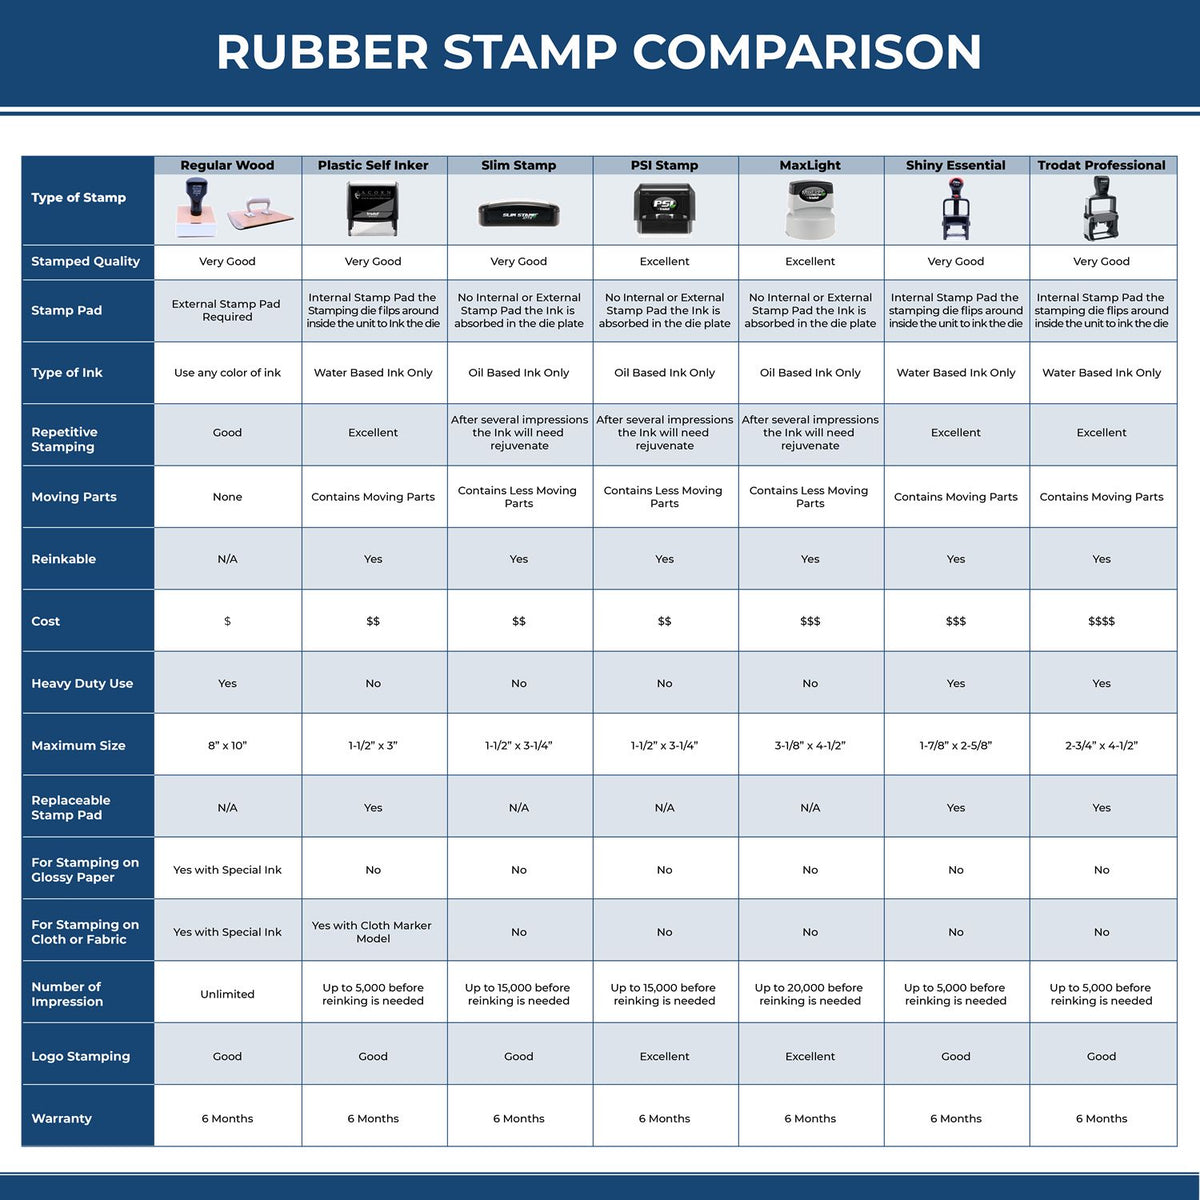 Top Secret Xstamper Stamp 5400 Rubber Stamp Comparison